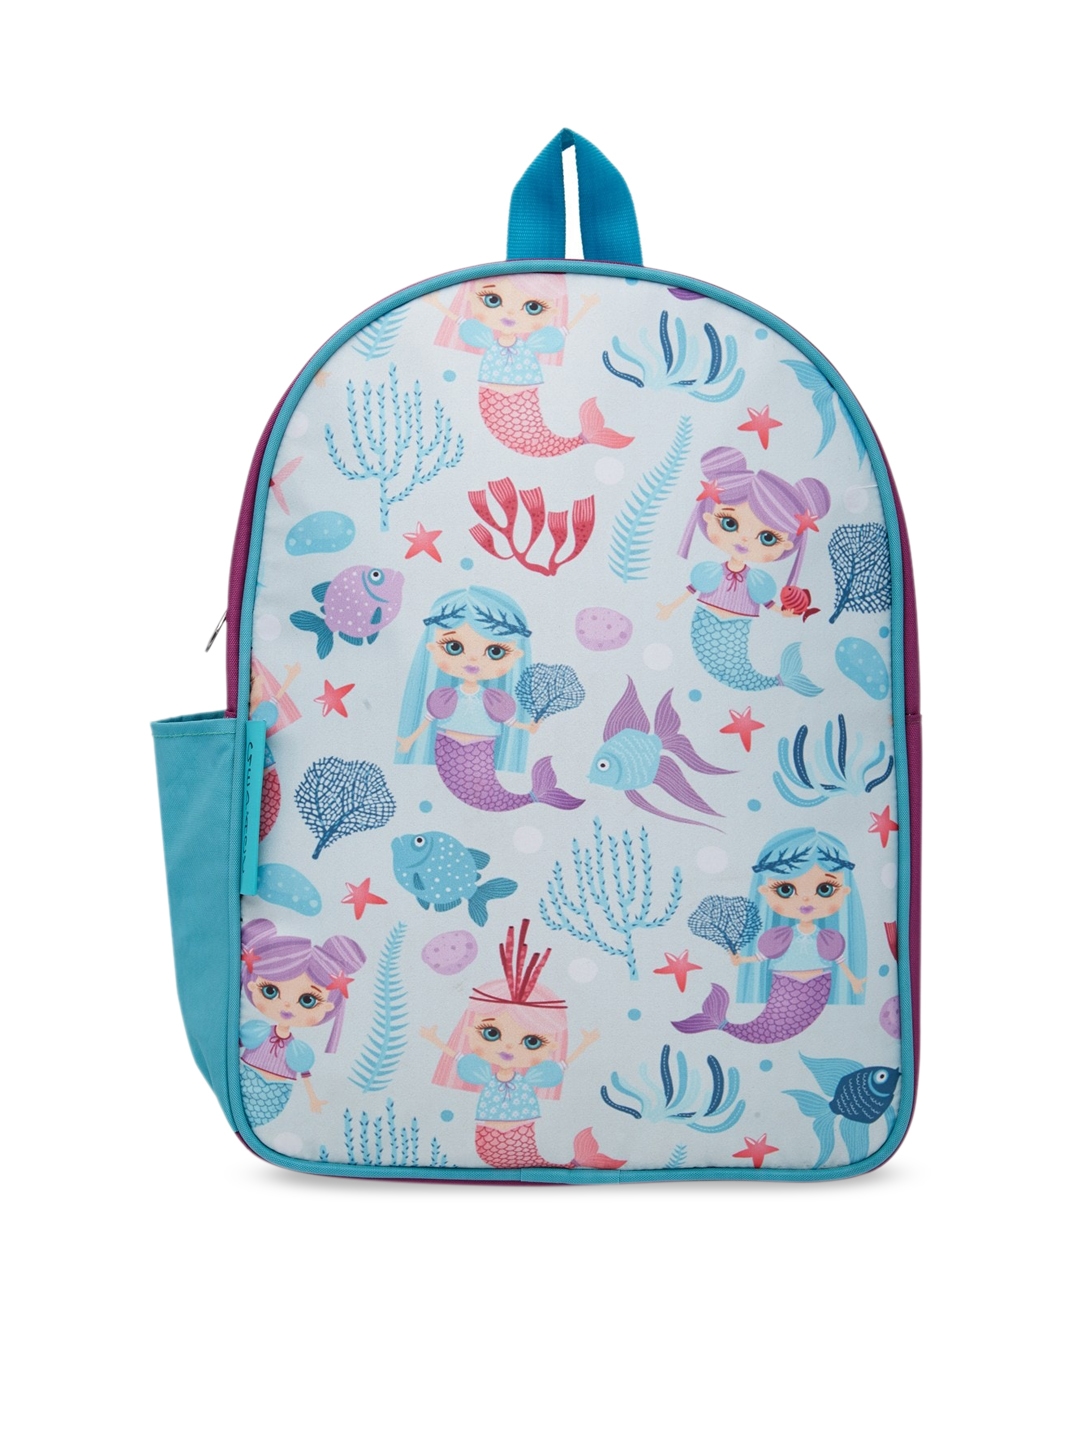 GEPACK by BagsRUs Purple 26cm Mermaid Character School Backpack Bag